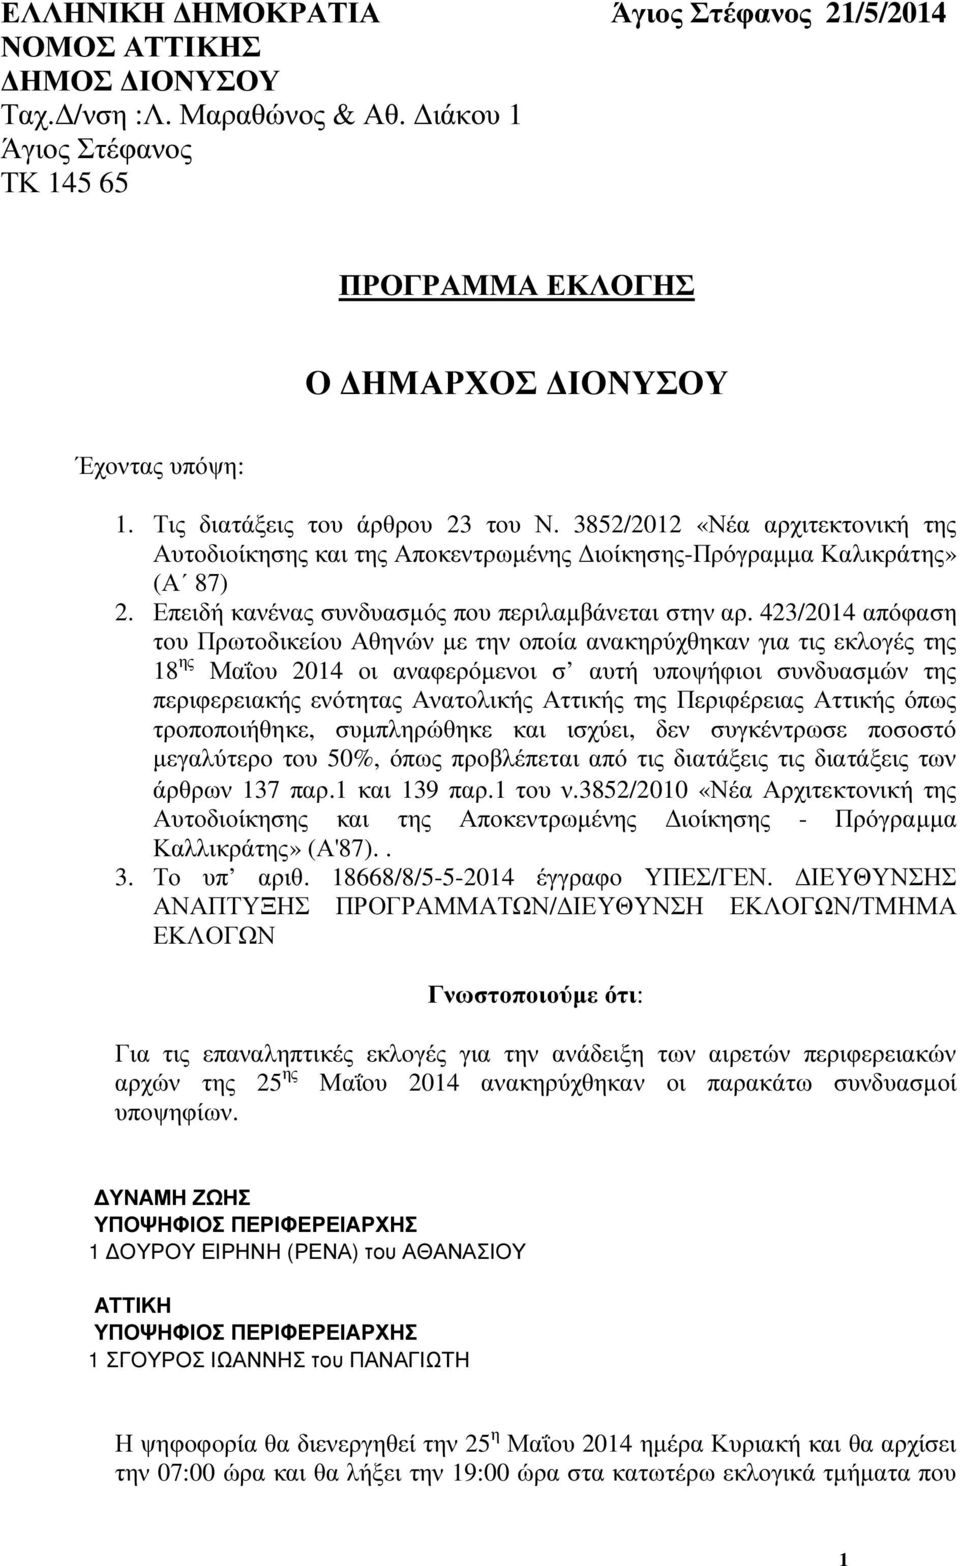 423/2014 απόφαση του Πρωτοδικείου Αθηνών µε την οποία ανακηρύχθηκαν για τις εκλογές της 18 ης Μαΐου 2014 οι αναφερόµενοι σ αυτή υποψήφιοι συνδυασµών της περιφερειακής ενότητας Ανατολικής Αττικής της